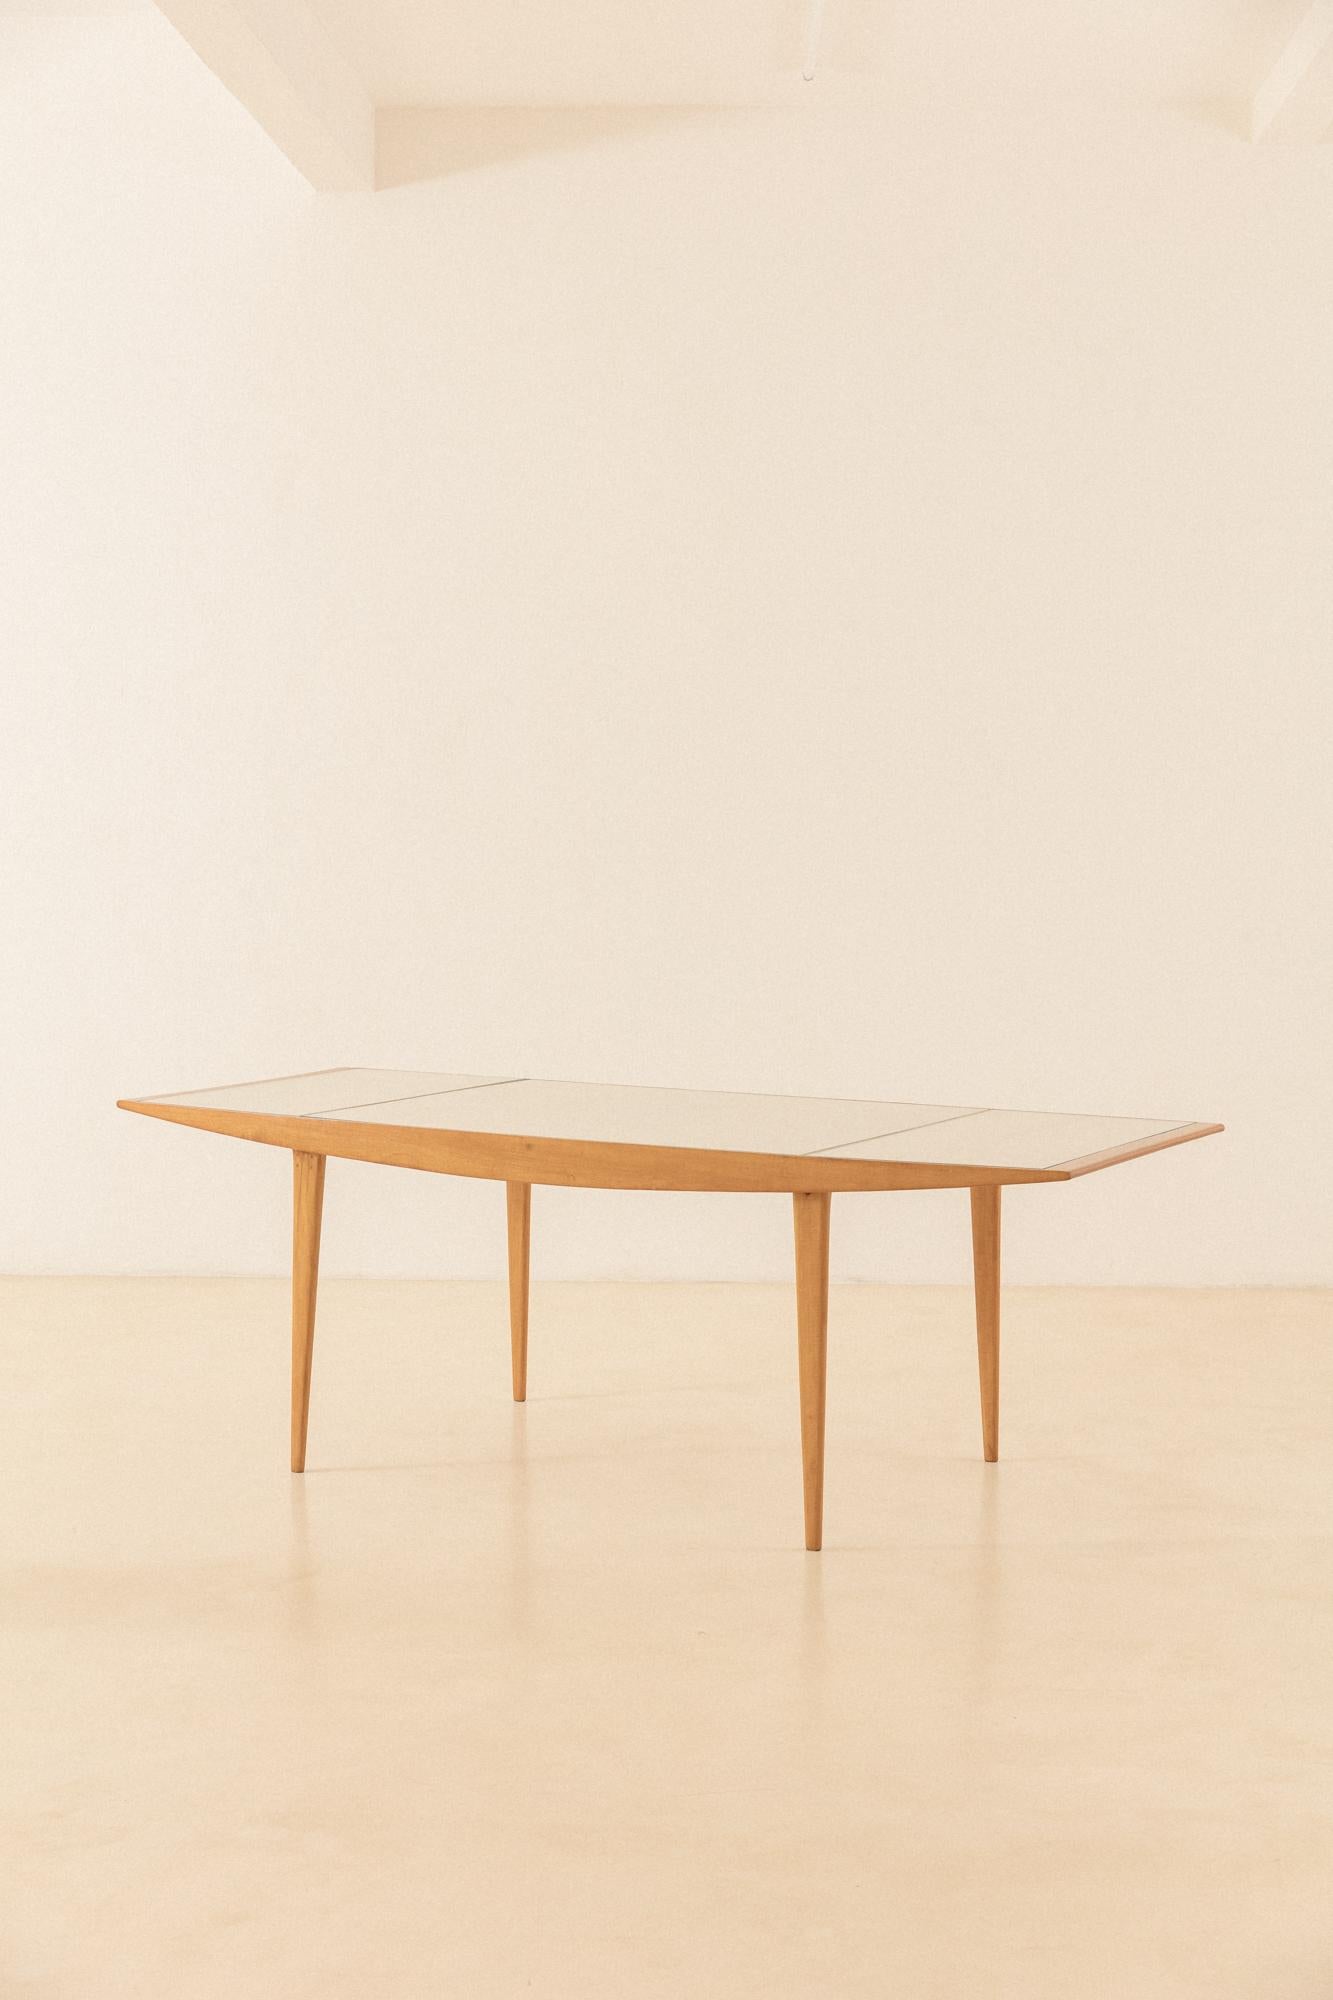 Les meubles de Carlo Hauner et Martin Eisler sont très bien conçus et bien exécutés, avec des détails constructifs ingénieux - très caractéristiques de toute production de l'époque au Brésil. Cette table de salle à manger en bois de Pau-Marfim avec